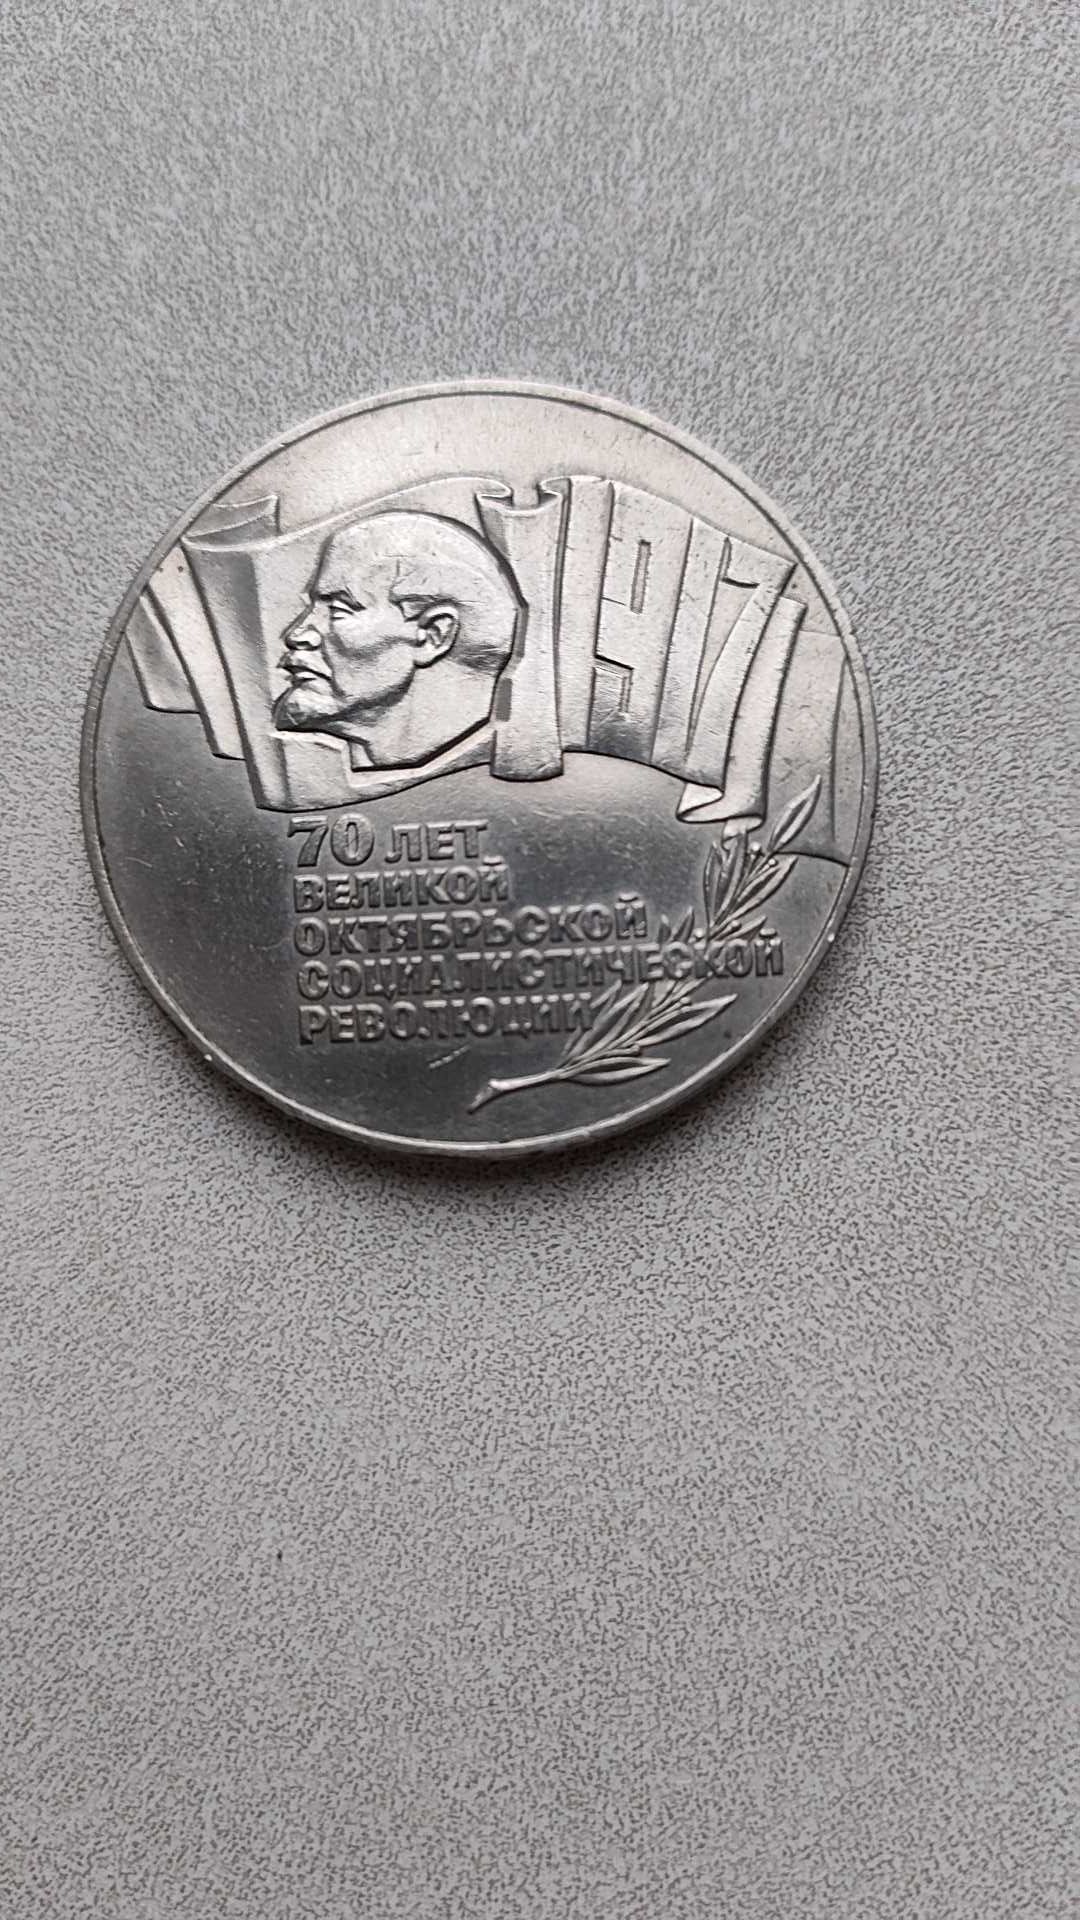 5 рублей. Шайба СССР.